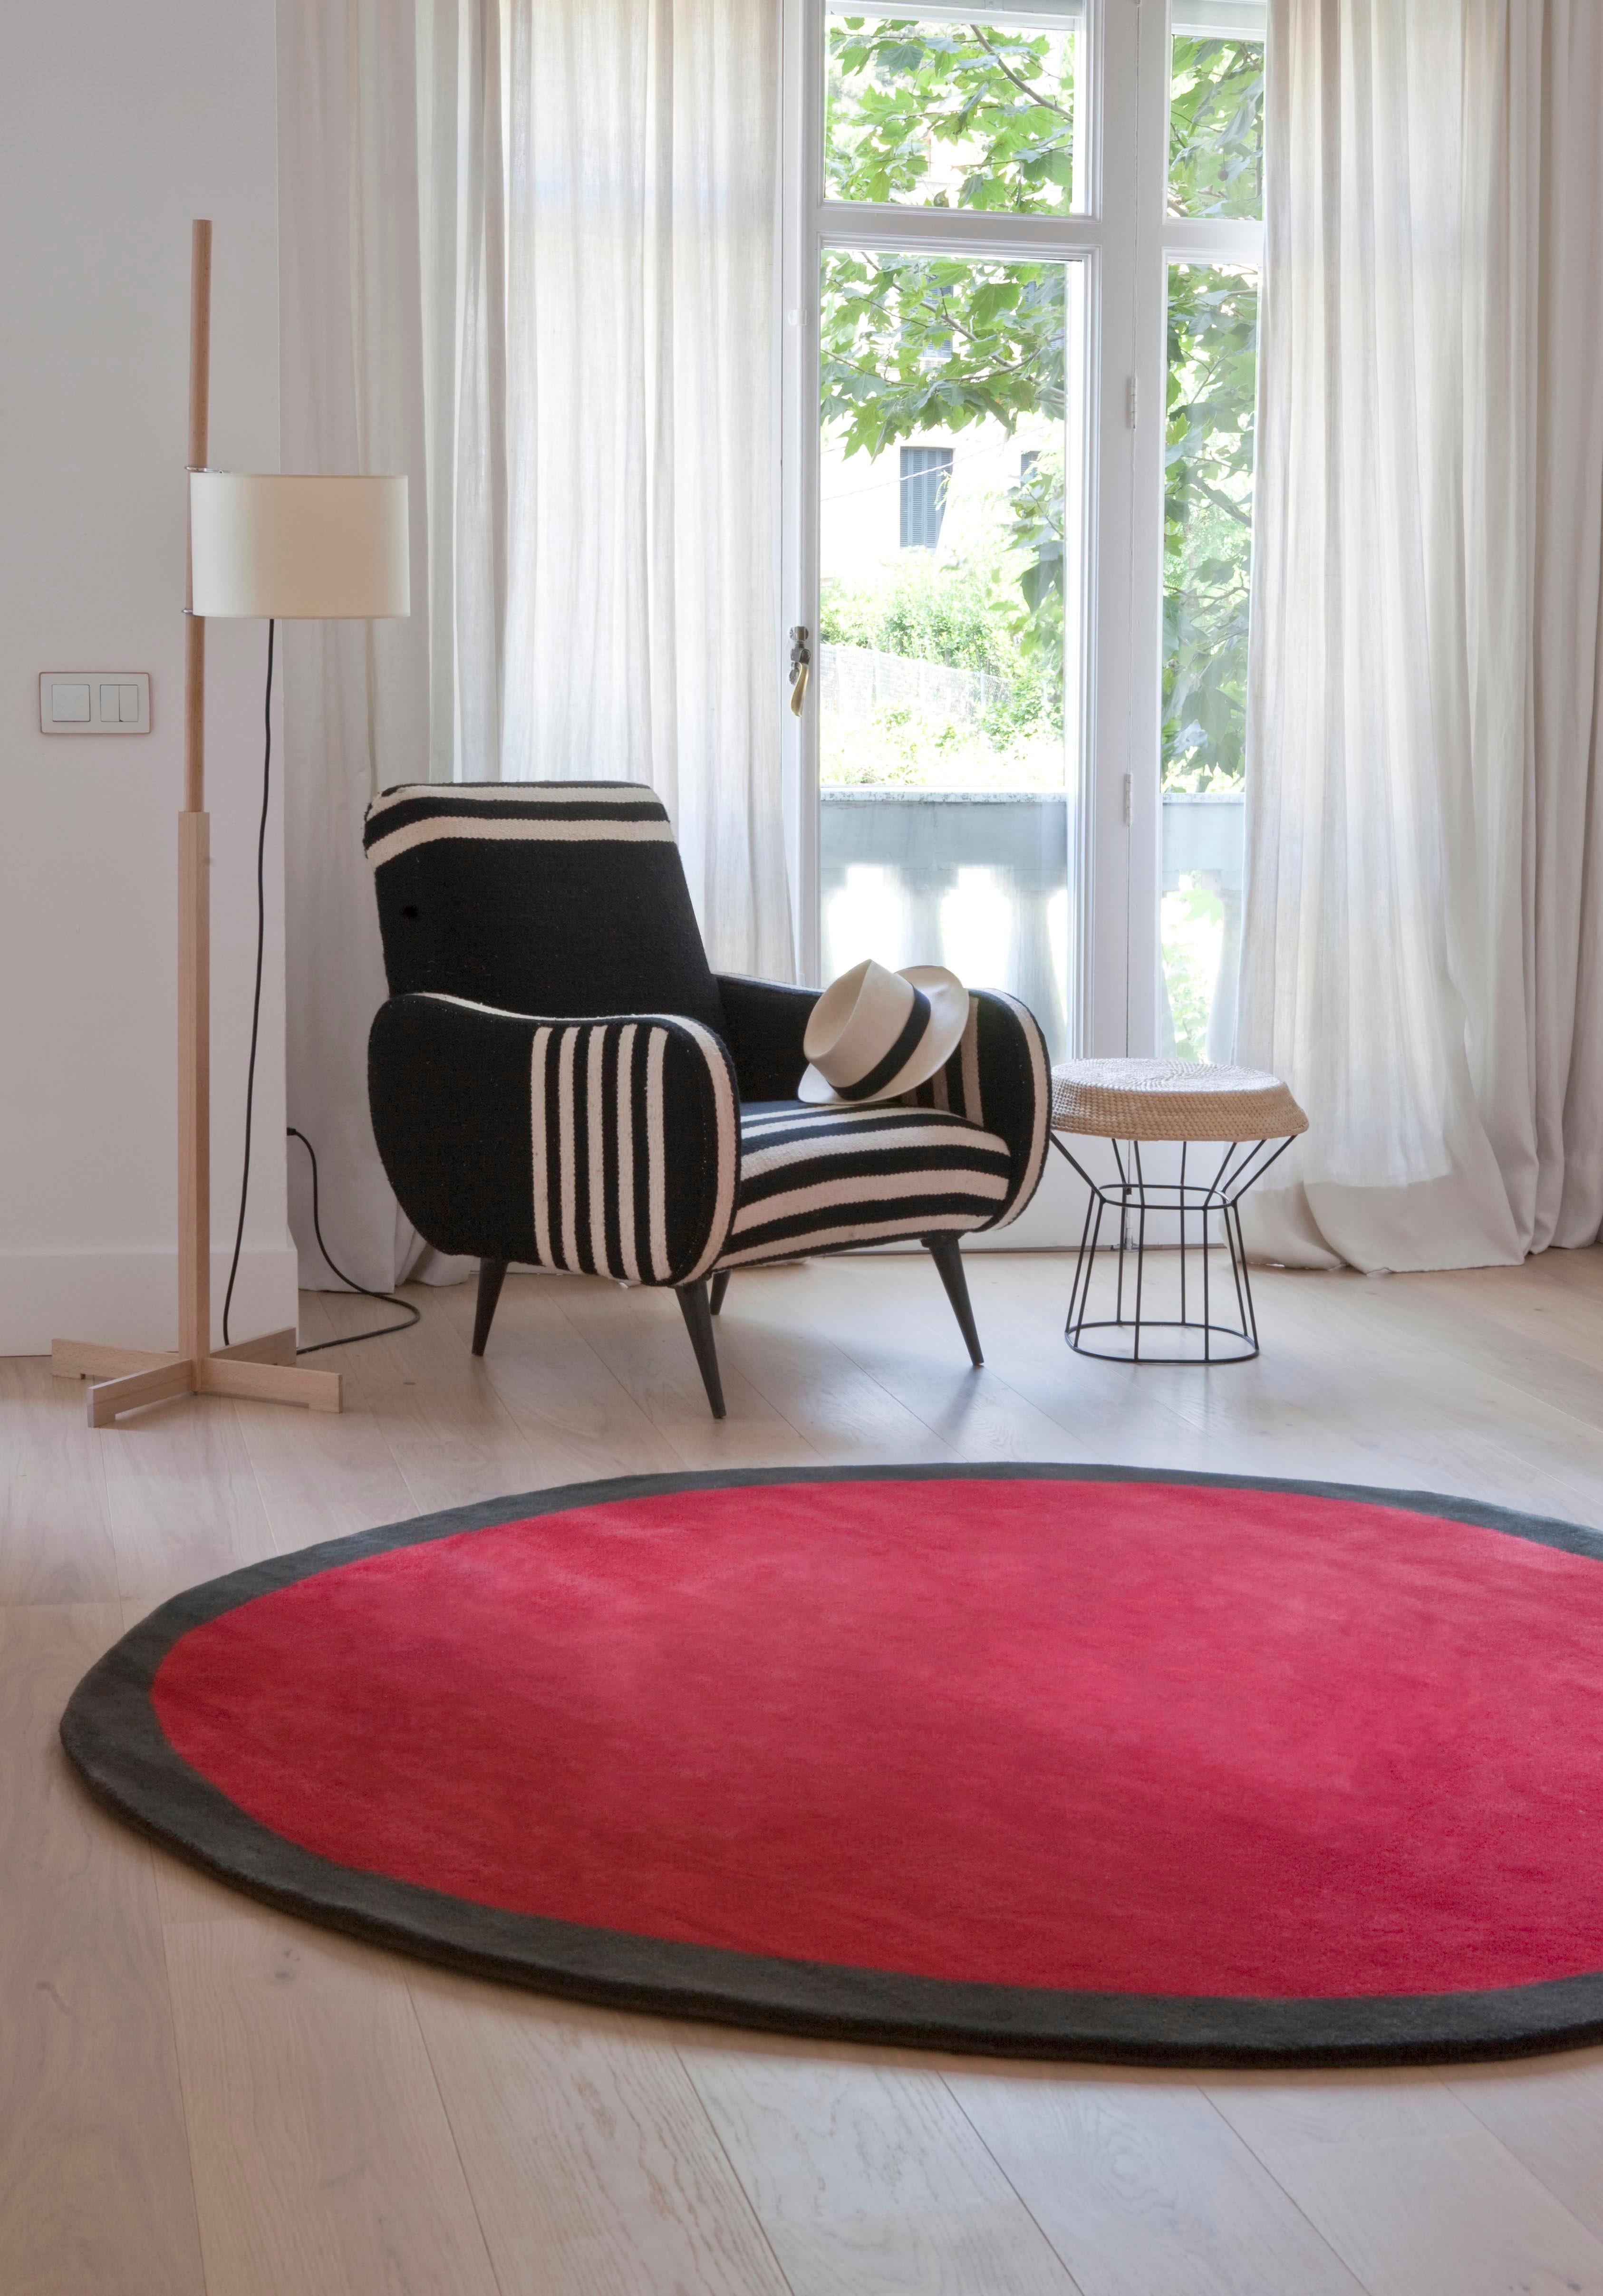 Kleiner runder Nanimarquina-Teppich 'Aros' in Rot. Hergestellt aus 100% handgetufteter neuseeländischer Wolle. 

Dieses geometrische Muster aus kontrastierenden Farben ist ein Teppich, der niemals exakt oder symmetrisch ist. Seine subtile Asymmetrie